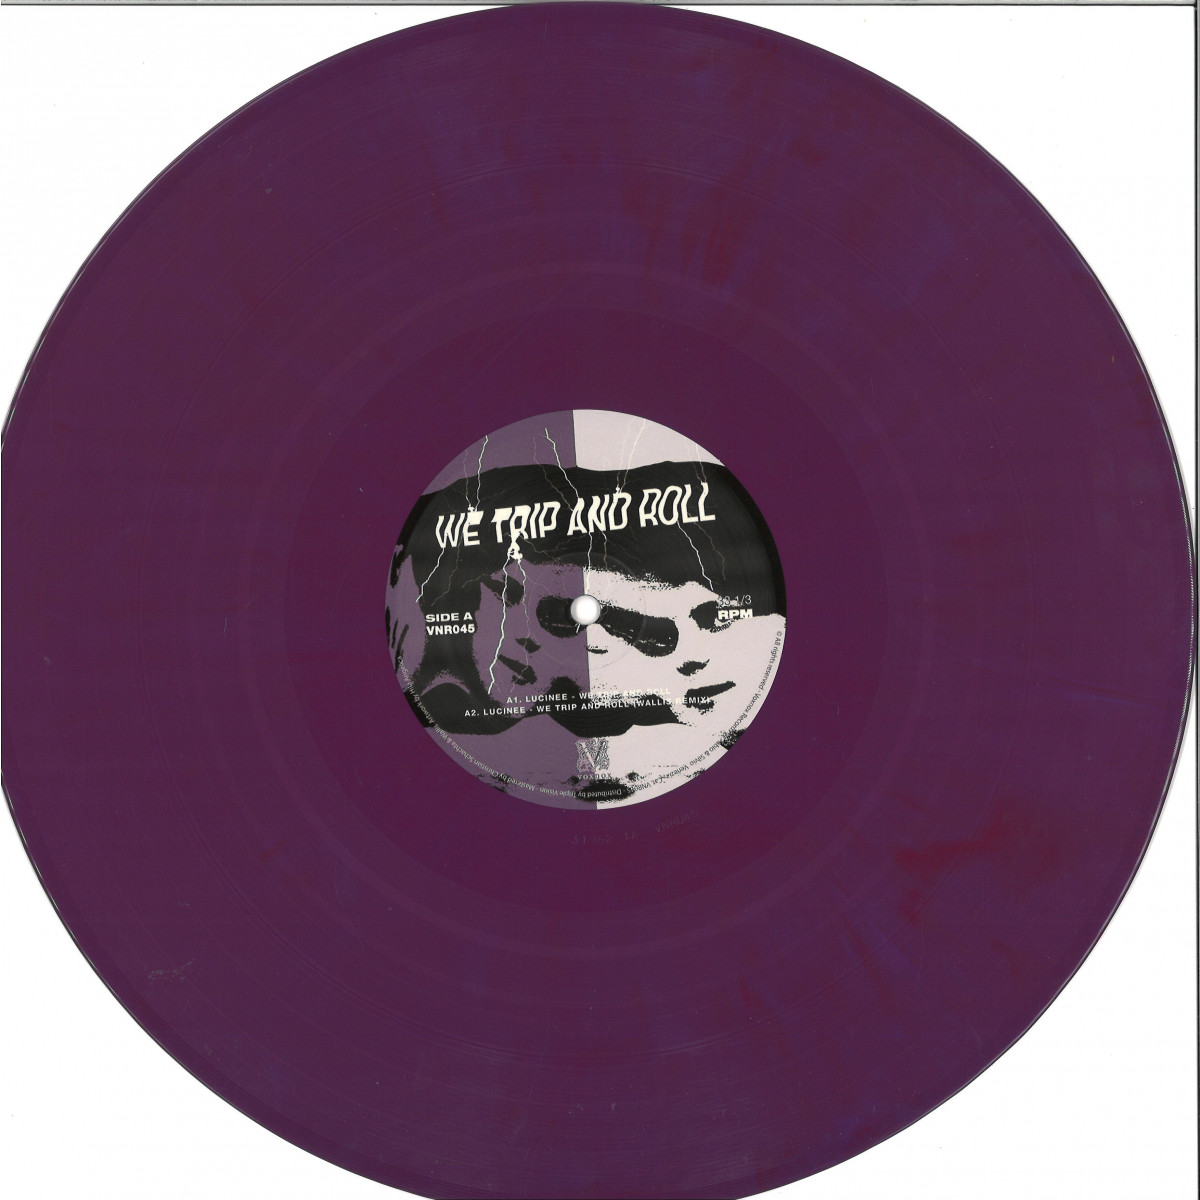 Lucinee (incl. Wallis & MRD remixes) - We Trip And Roll / Voxnox VNR045 -  Vinyl